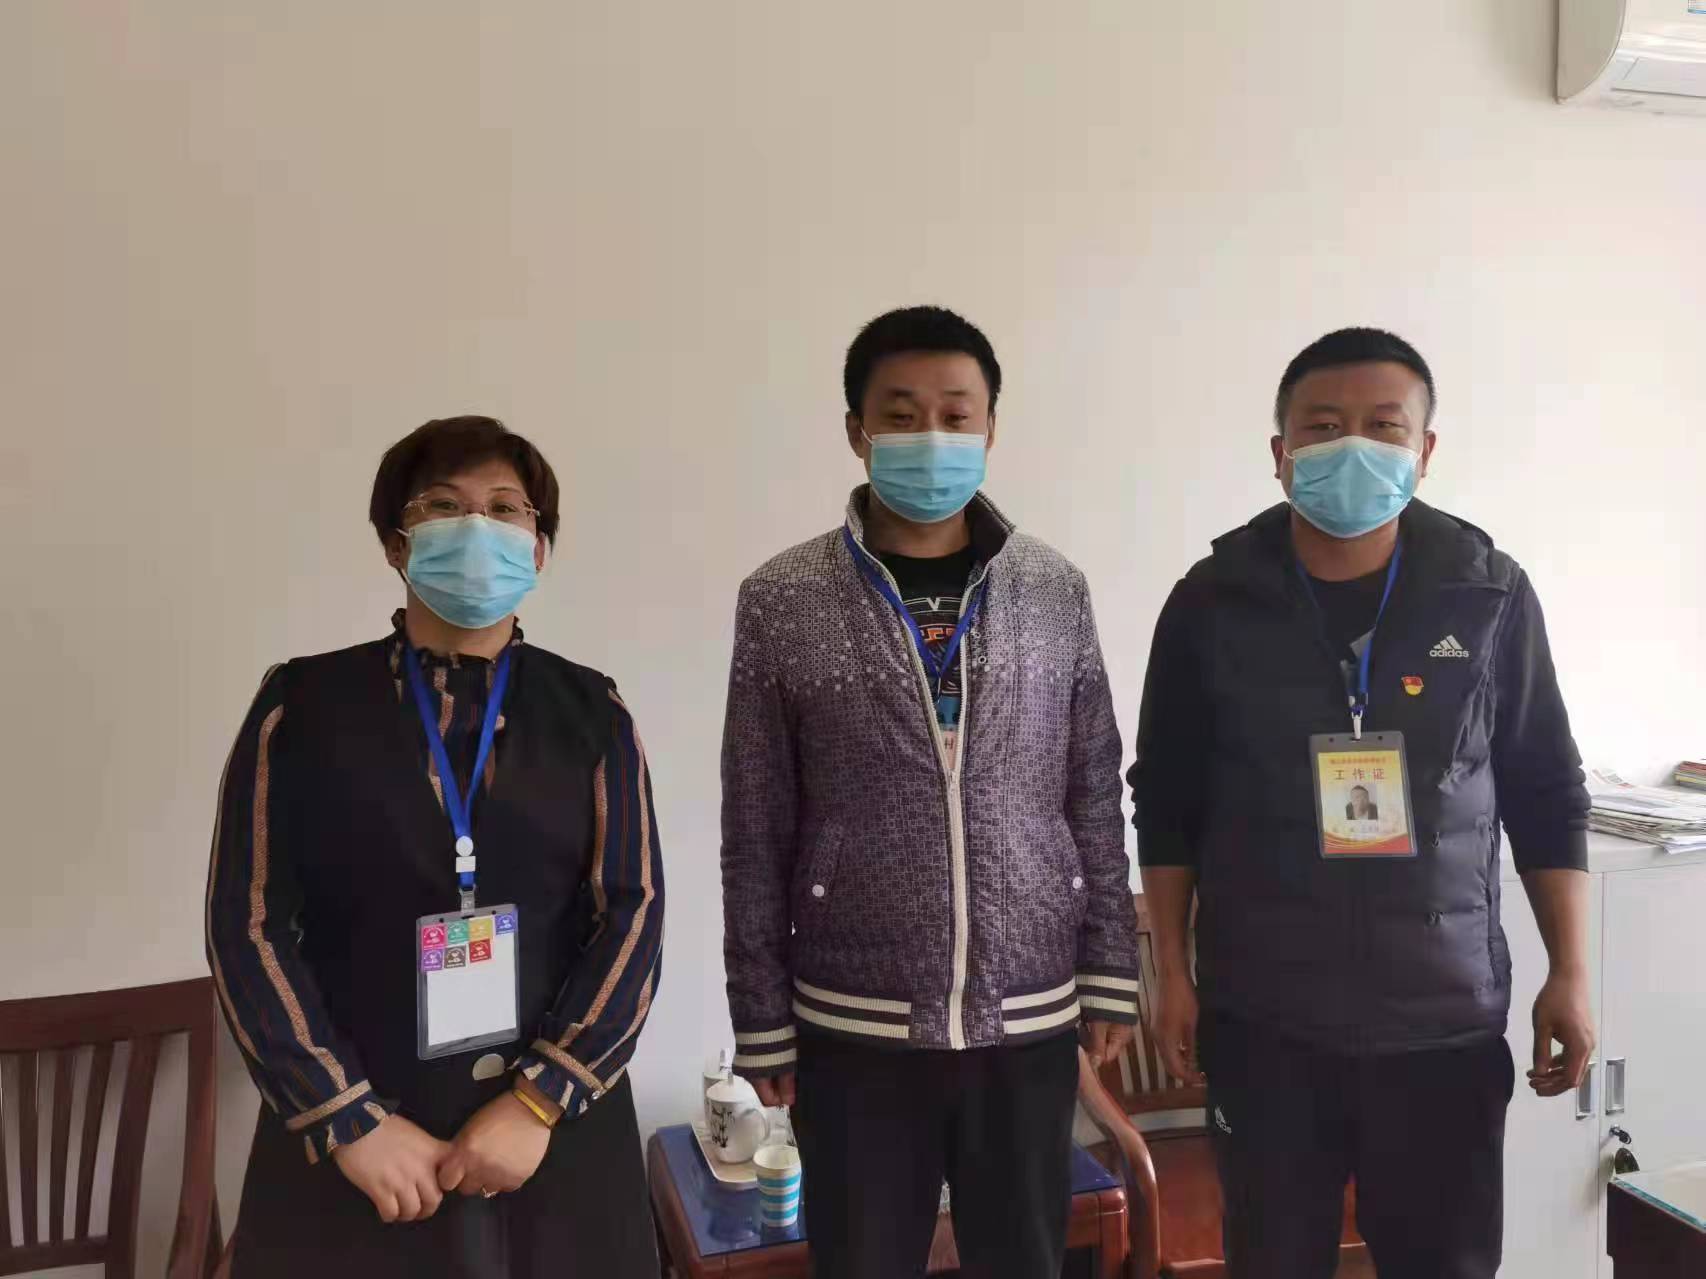 河北唐山:丰润志愿者发起疫情无情人间爱捐赠活动